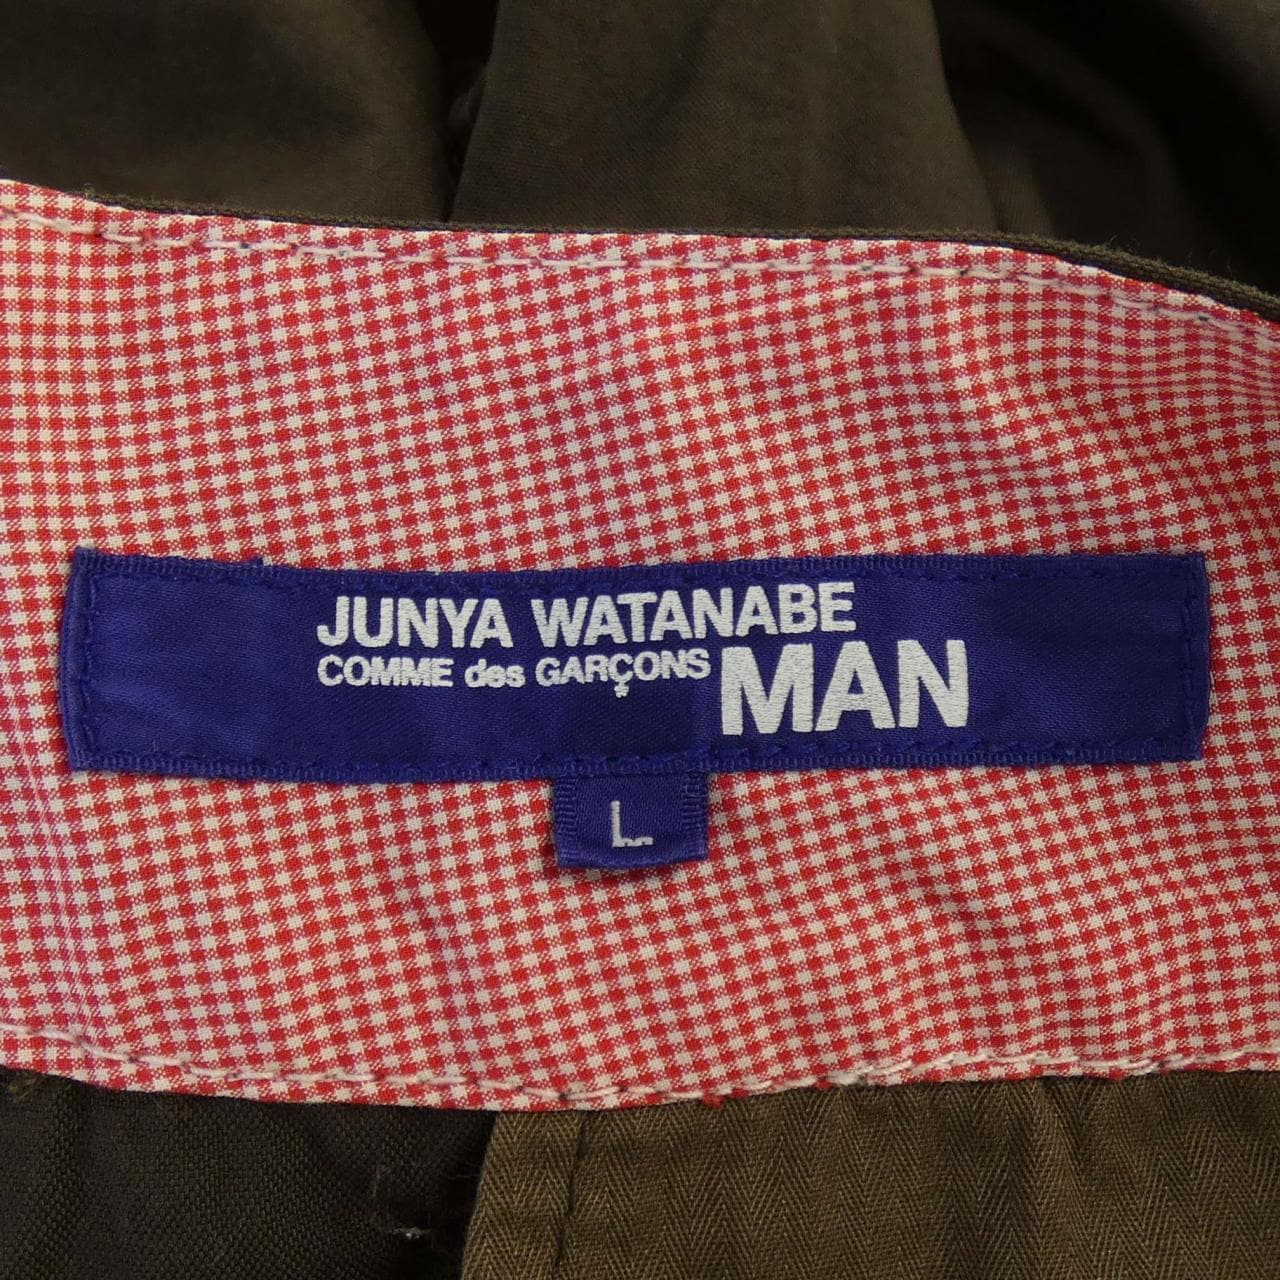 ジュンヤワタナベマン JUNYA WATANABE MAN パンツ